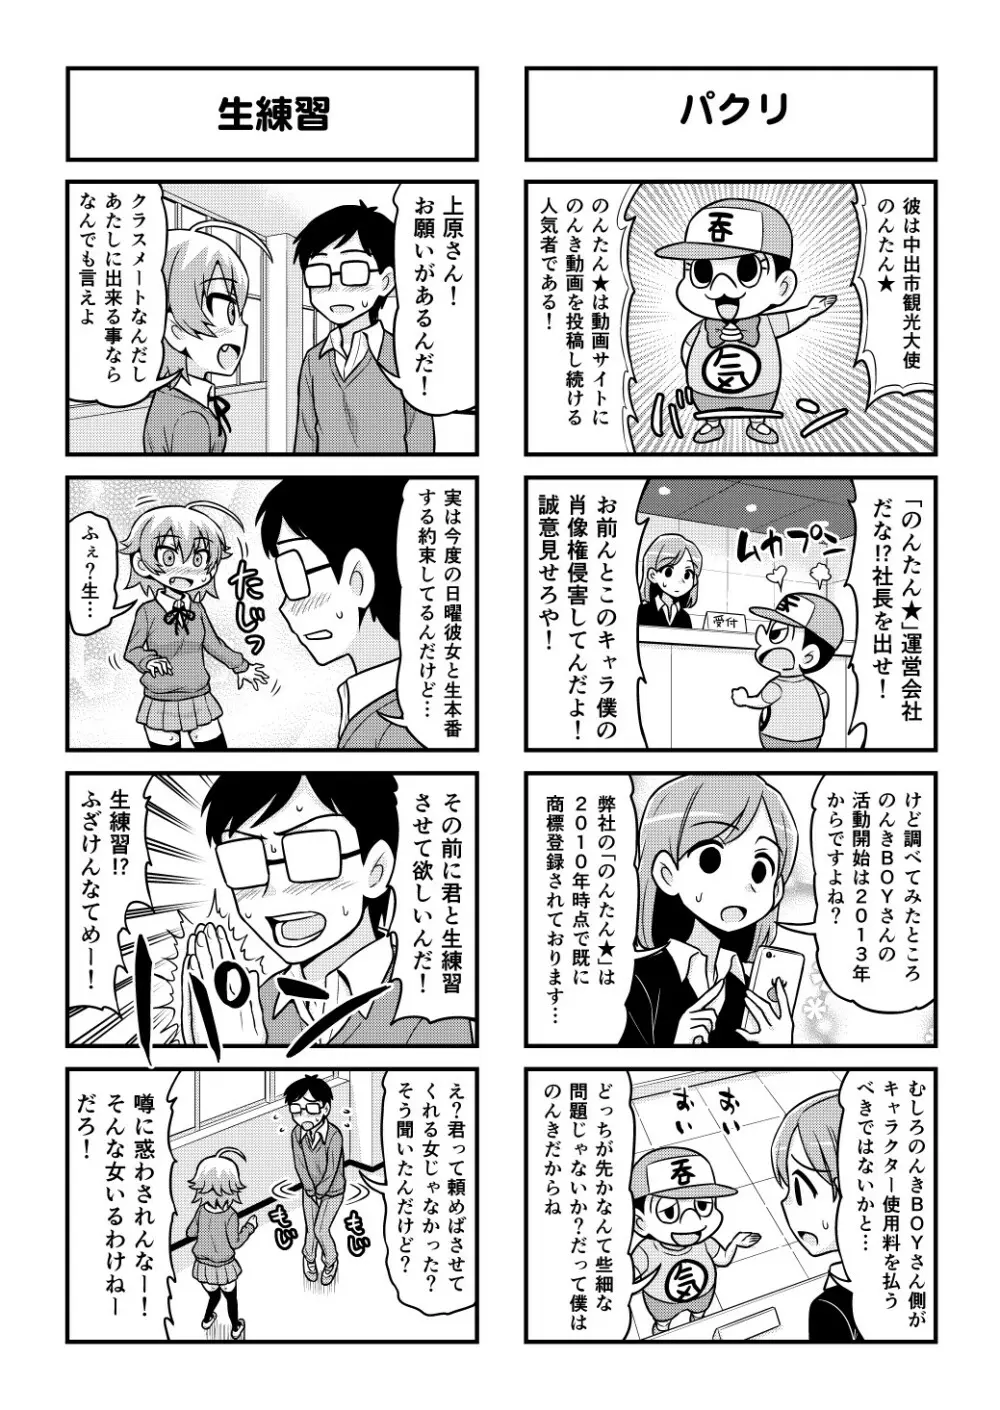 のんきBOY 1-48 - page434